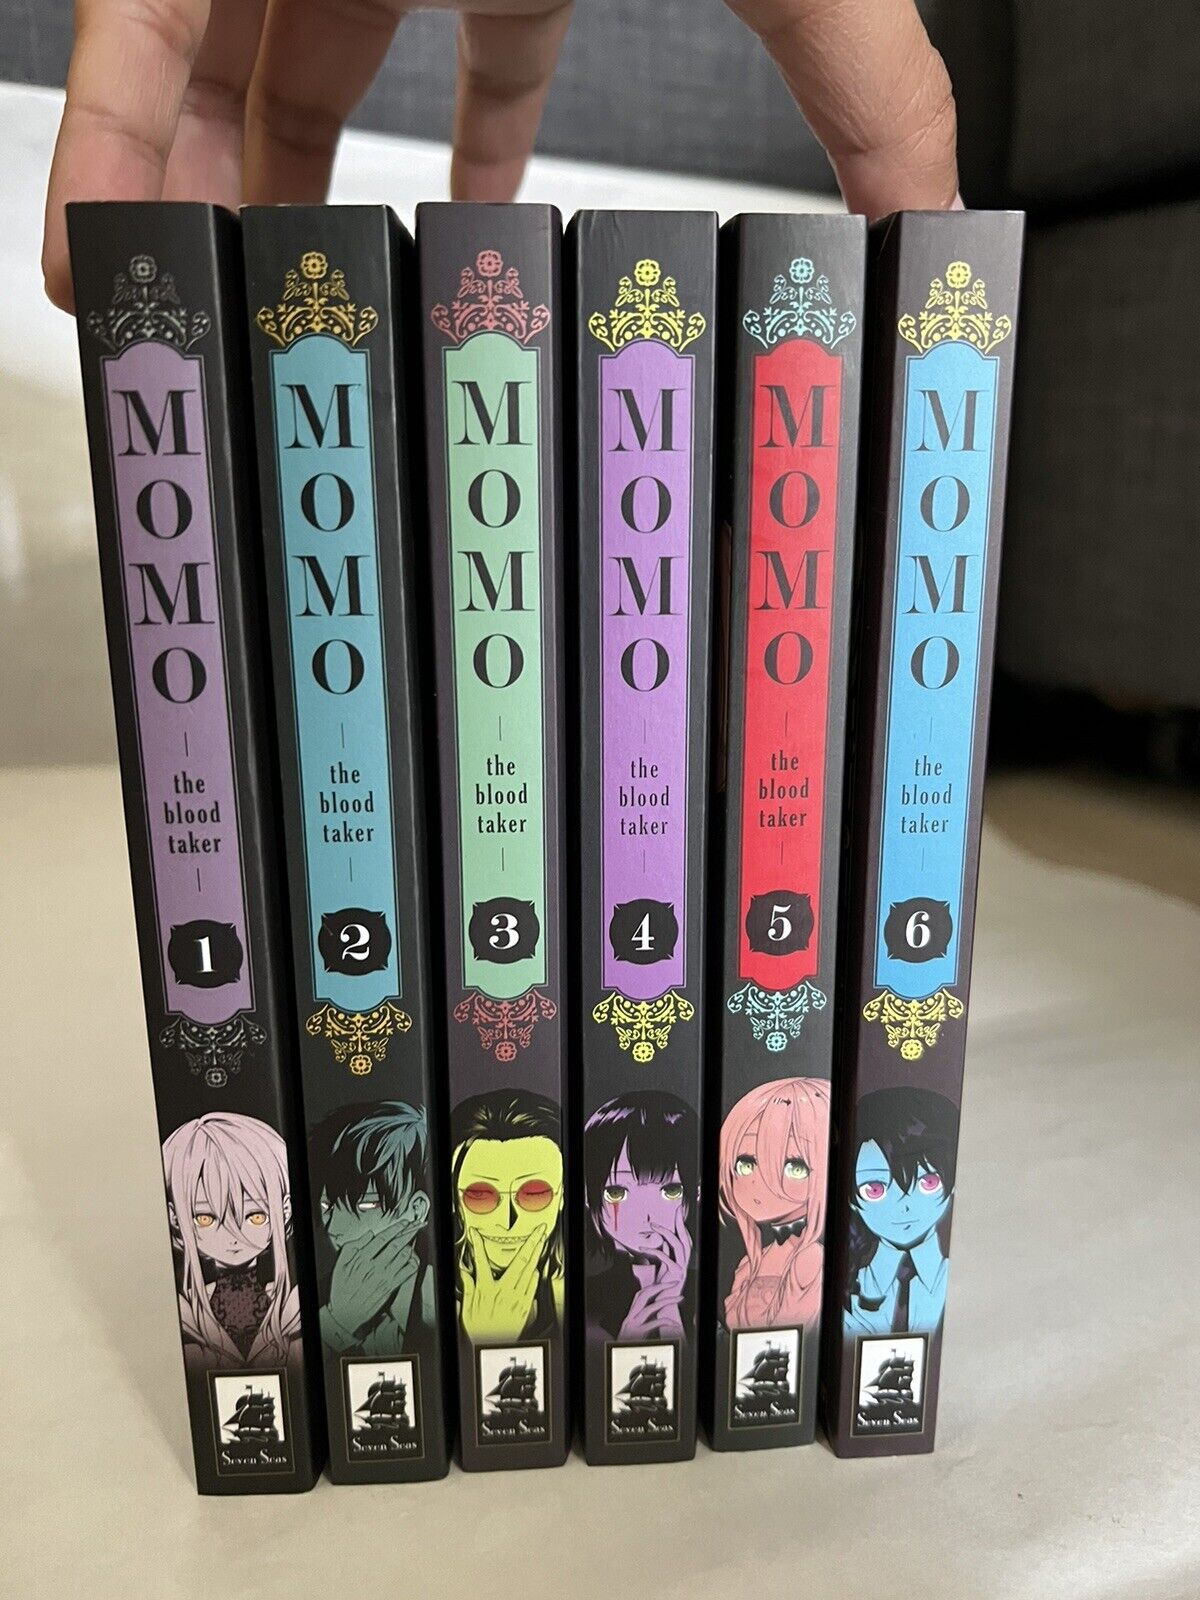 Momo: The Blood Taker Volumes 1-6 English